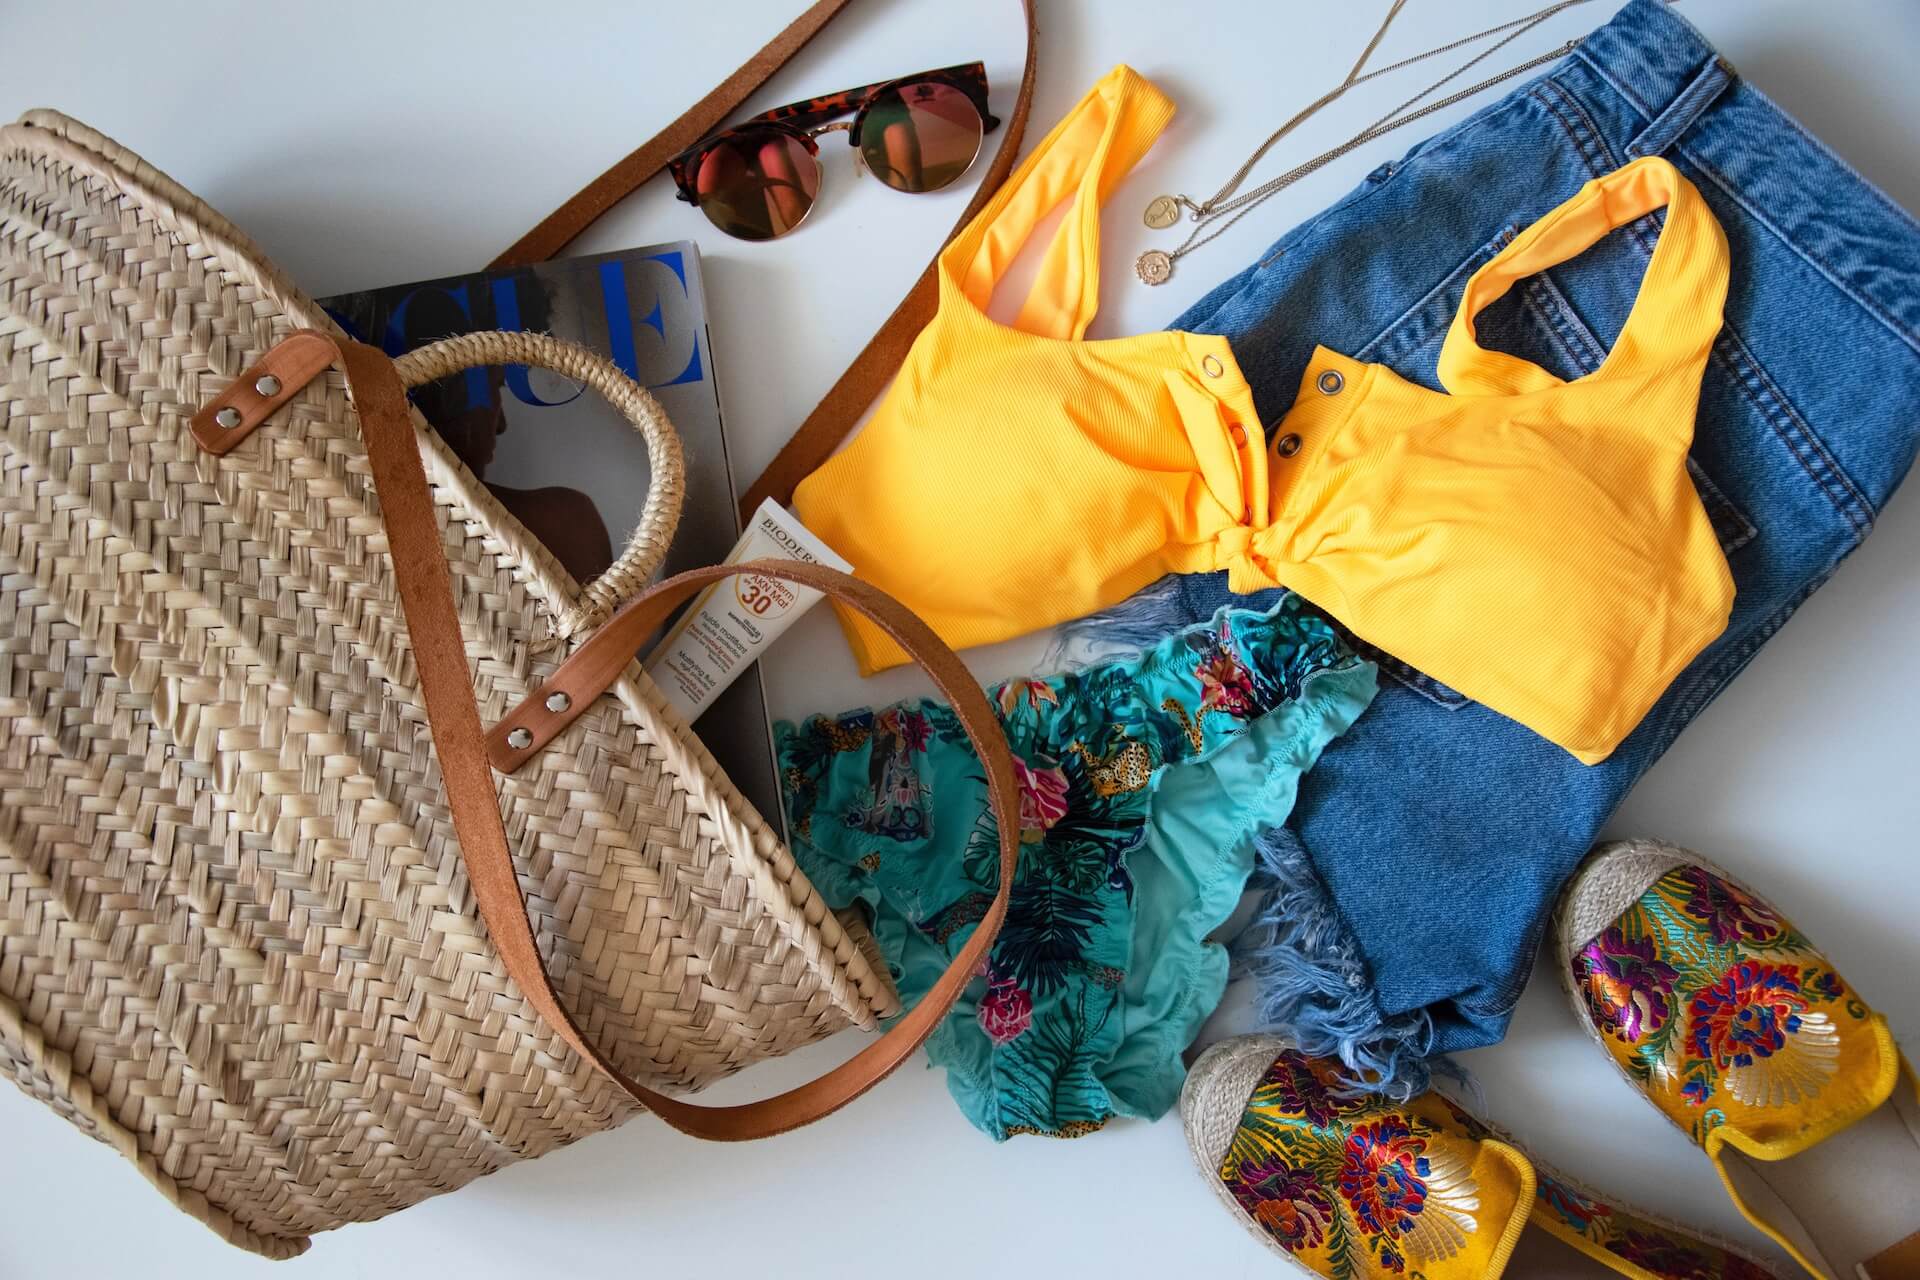 Clothes in a beach bag